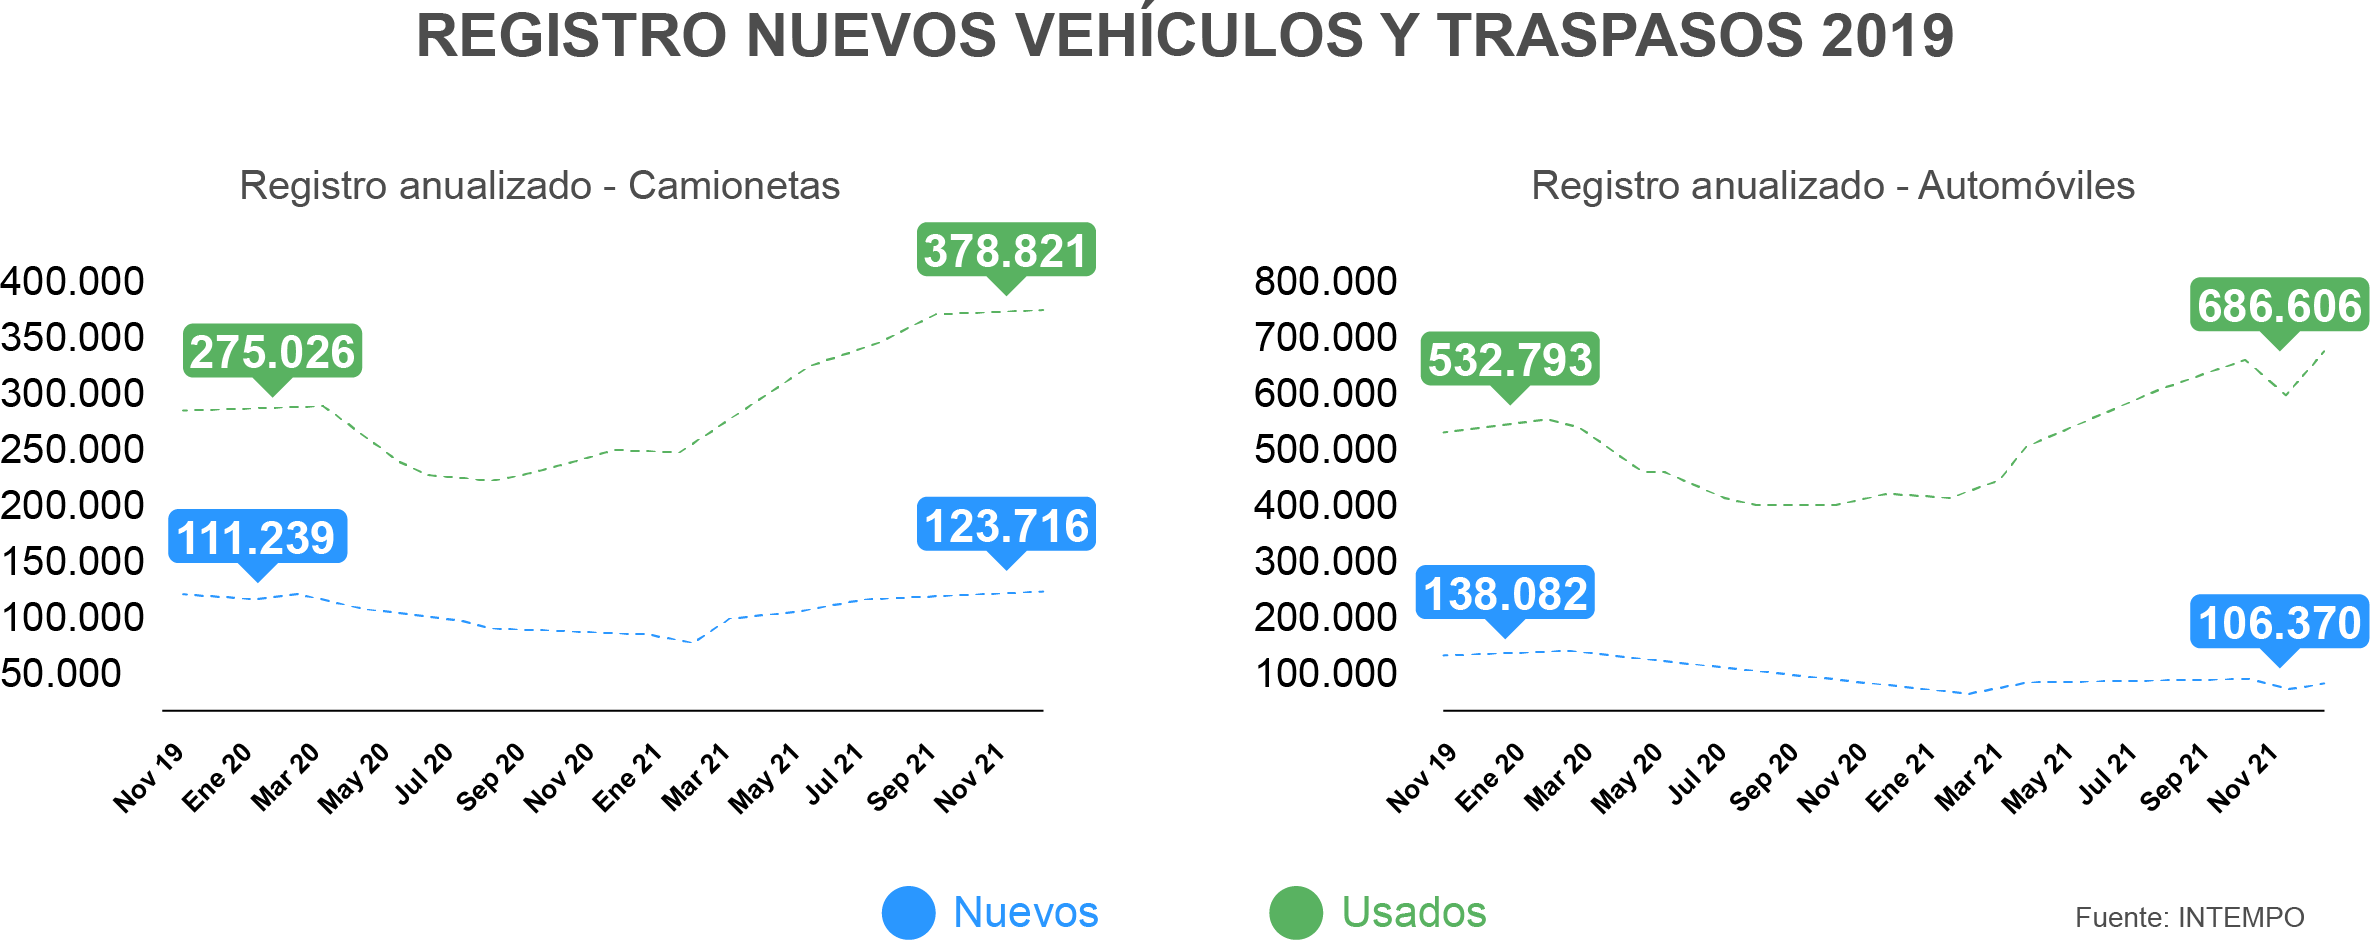 Mercado de vehículos usados en Colombia